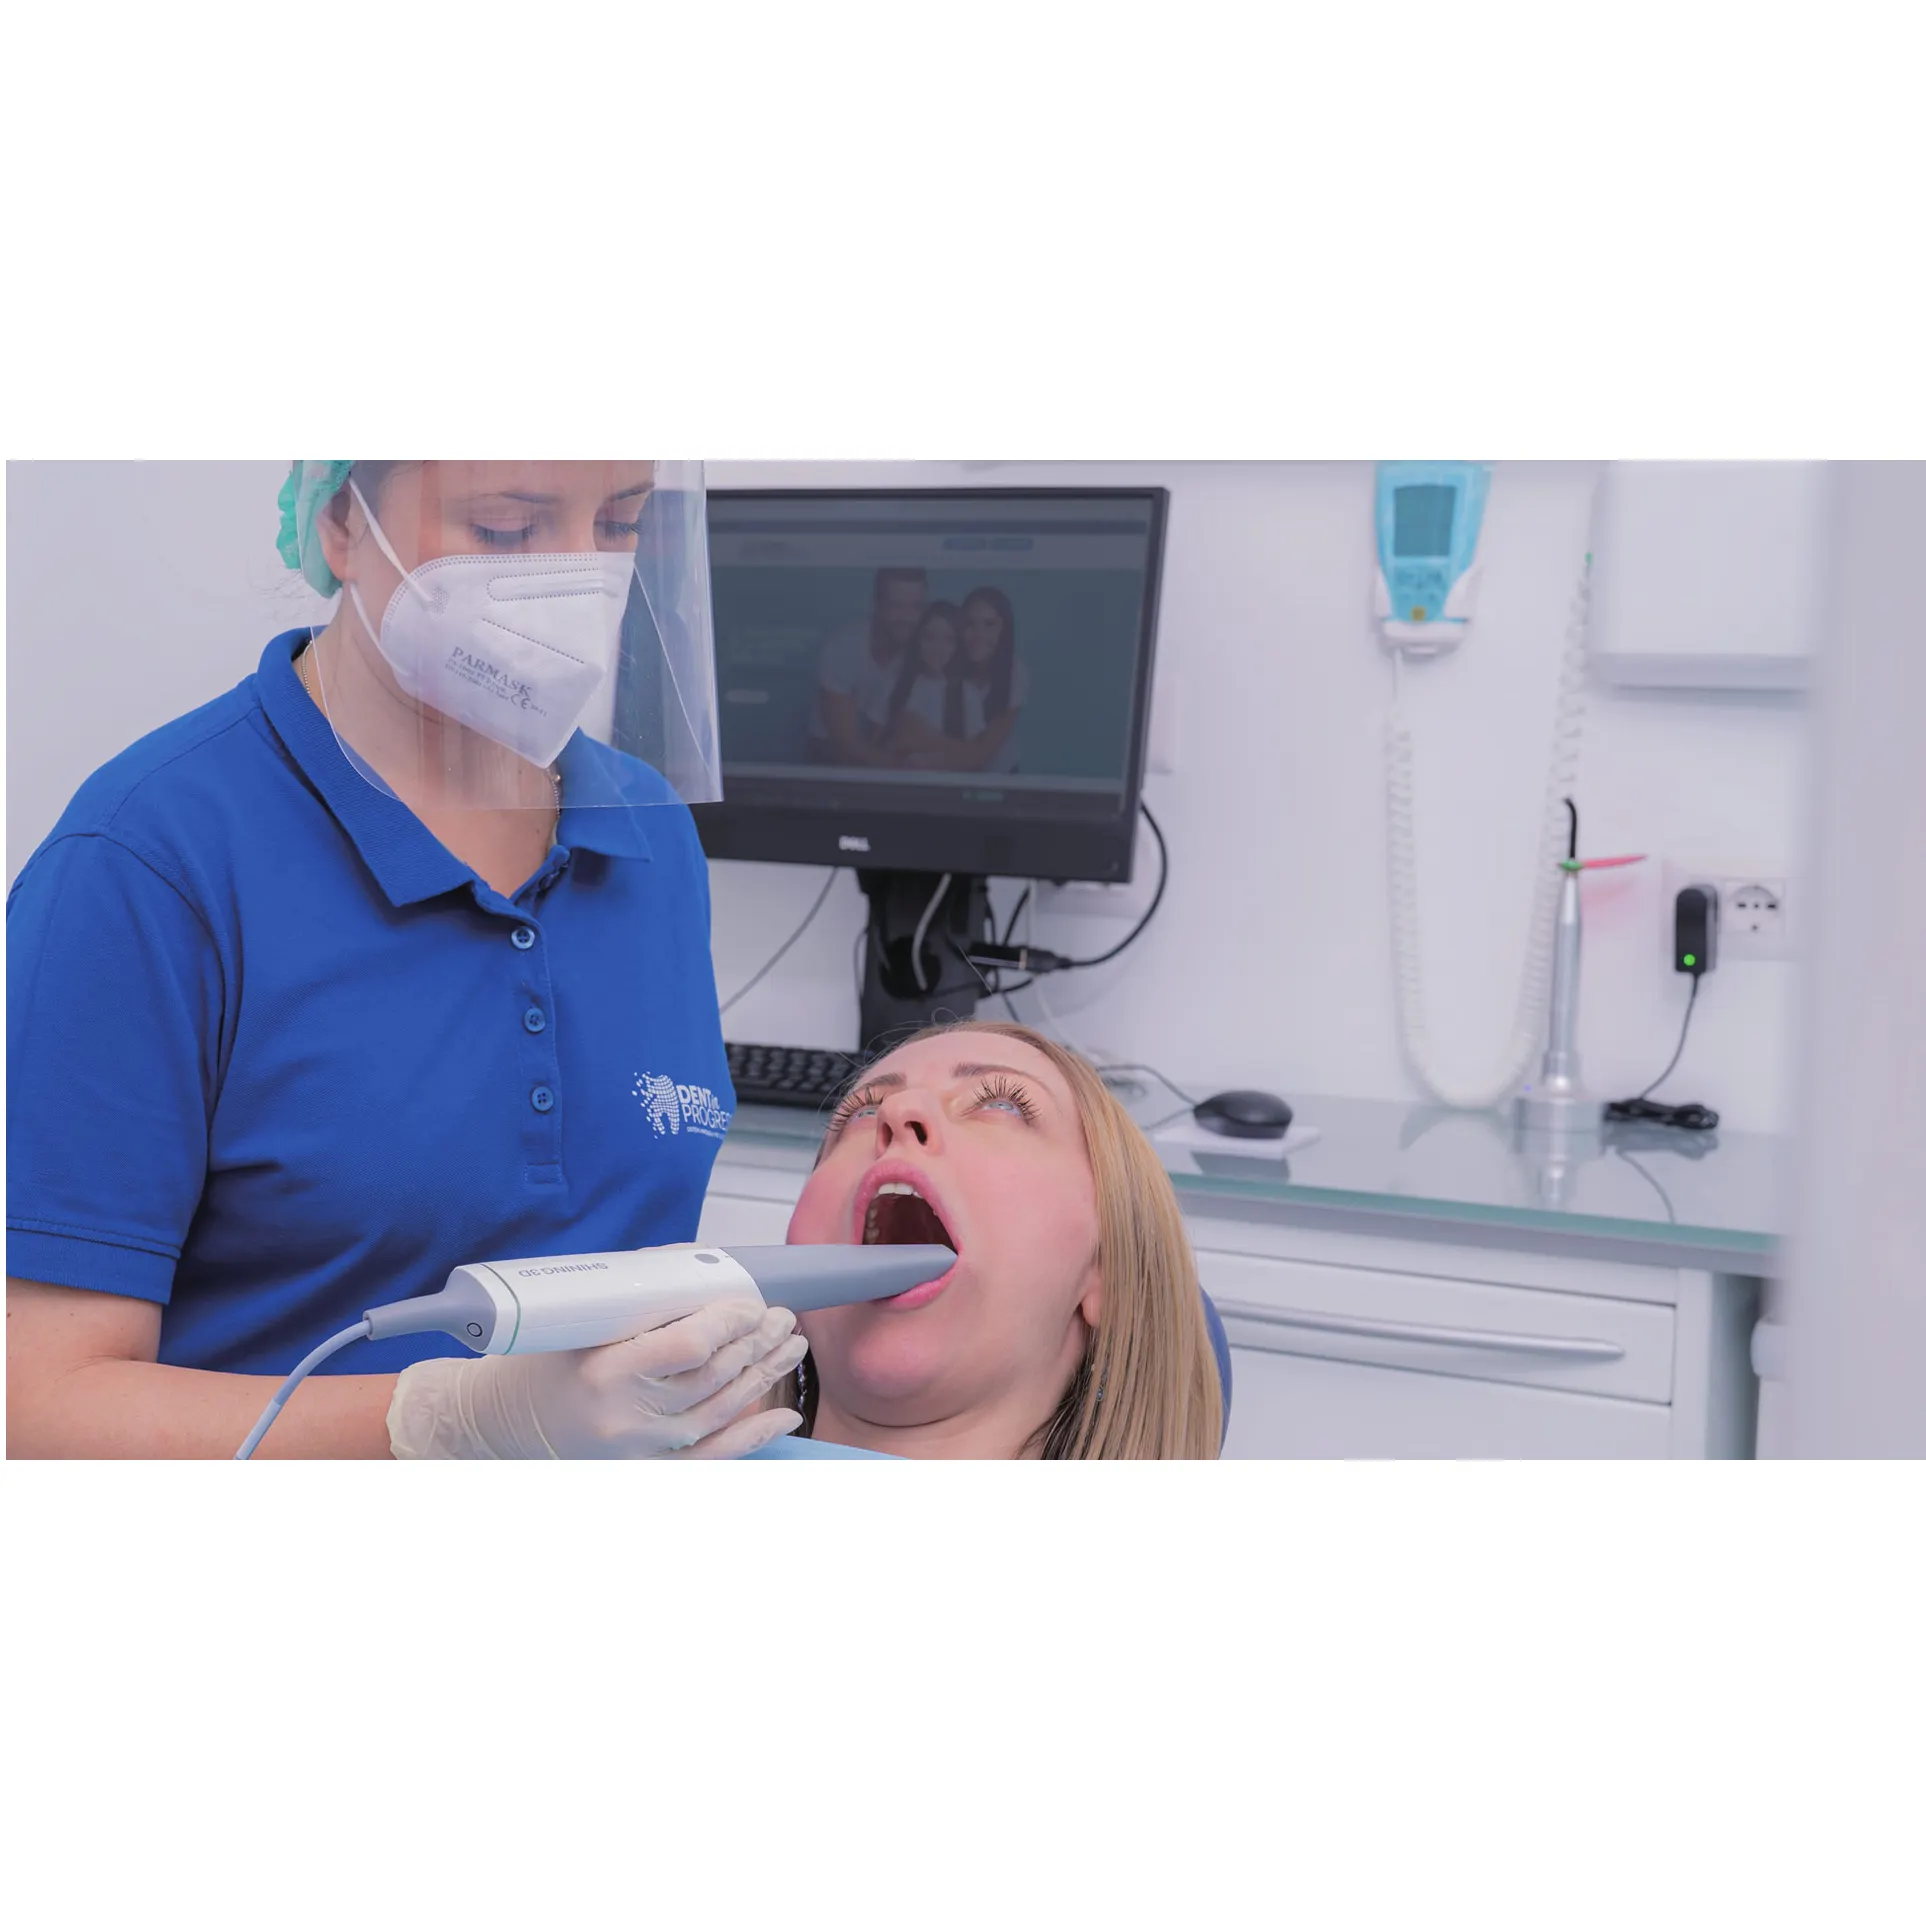 Escáner dental intraoral 3D brillante Escáner dental intraoral Con Software y escáner equipo dental intraoral